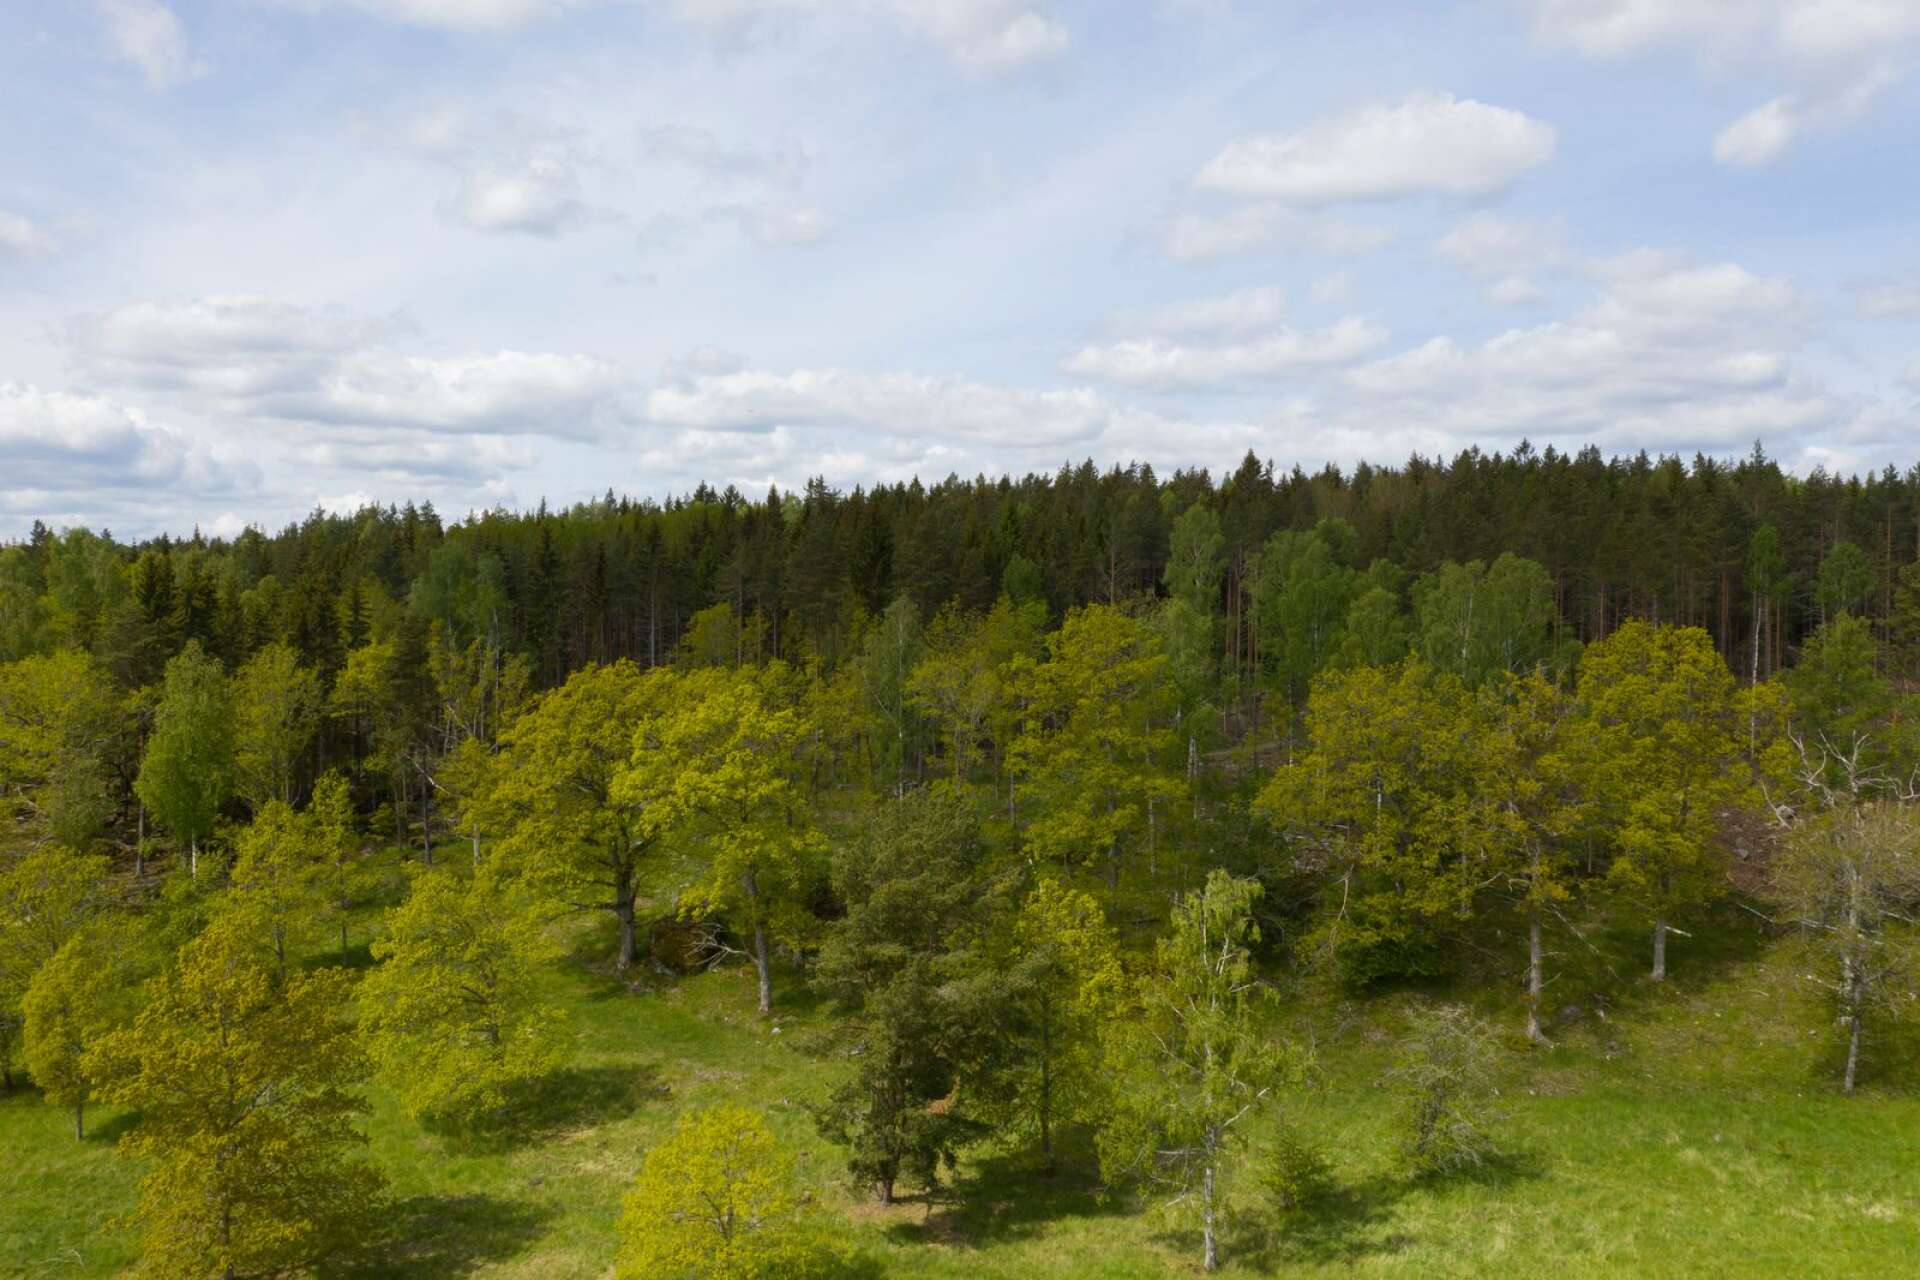 Det viktigaste är att vi undantar tillräckligt mycket, inklusive de skogar som ännu har kvar höga naturvärden, för att rädda den del av Jordens biologiska mångfald som hör hemma i vårt land, skriver Torbjörn Nilsson.